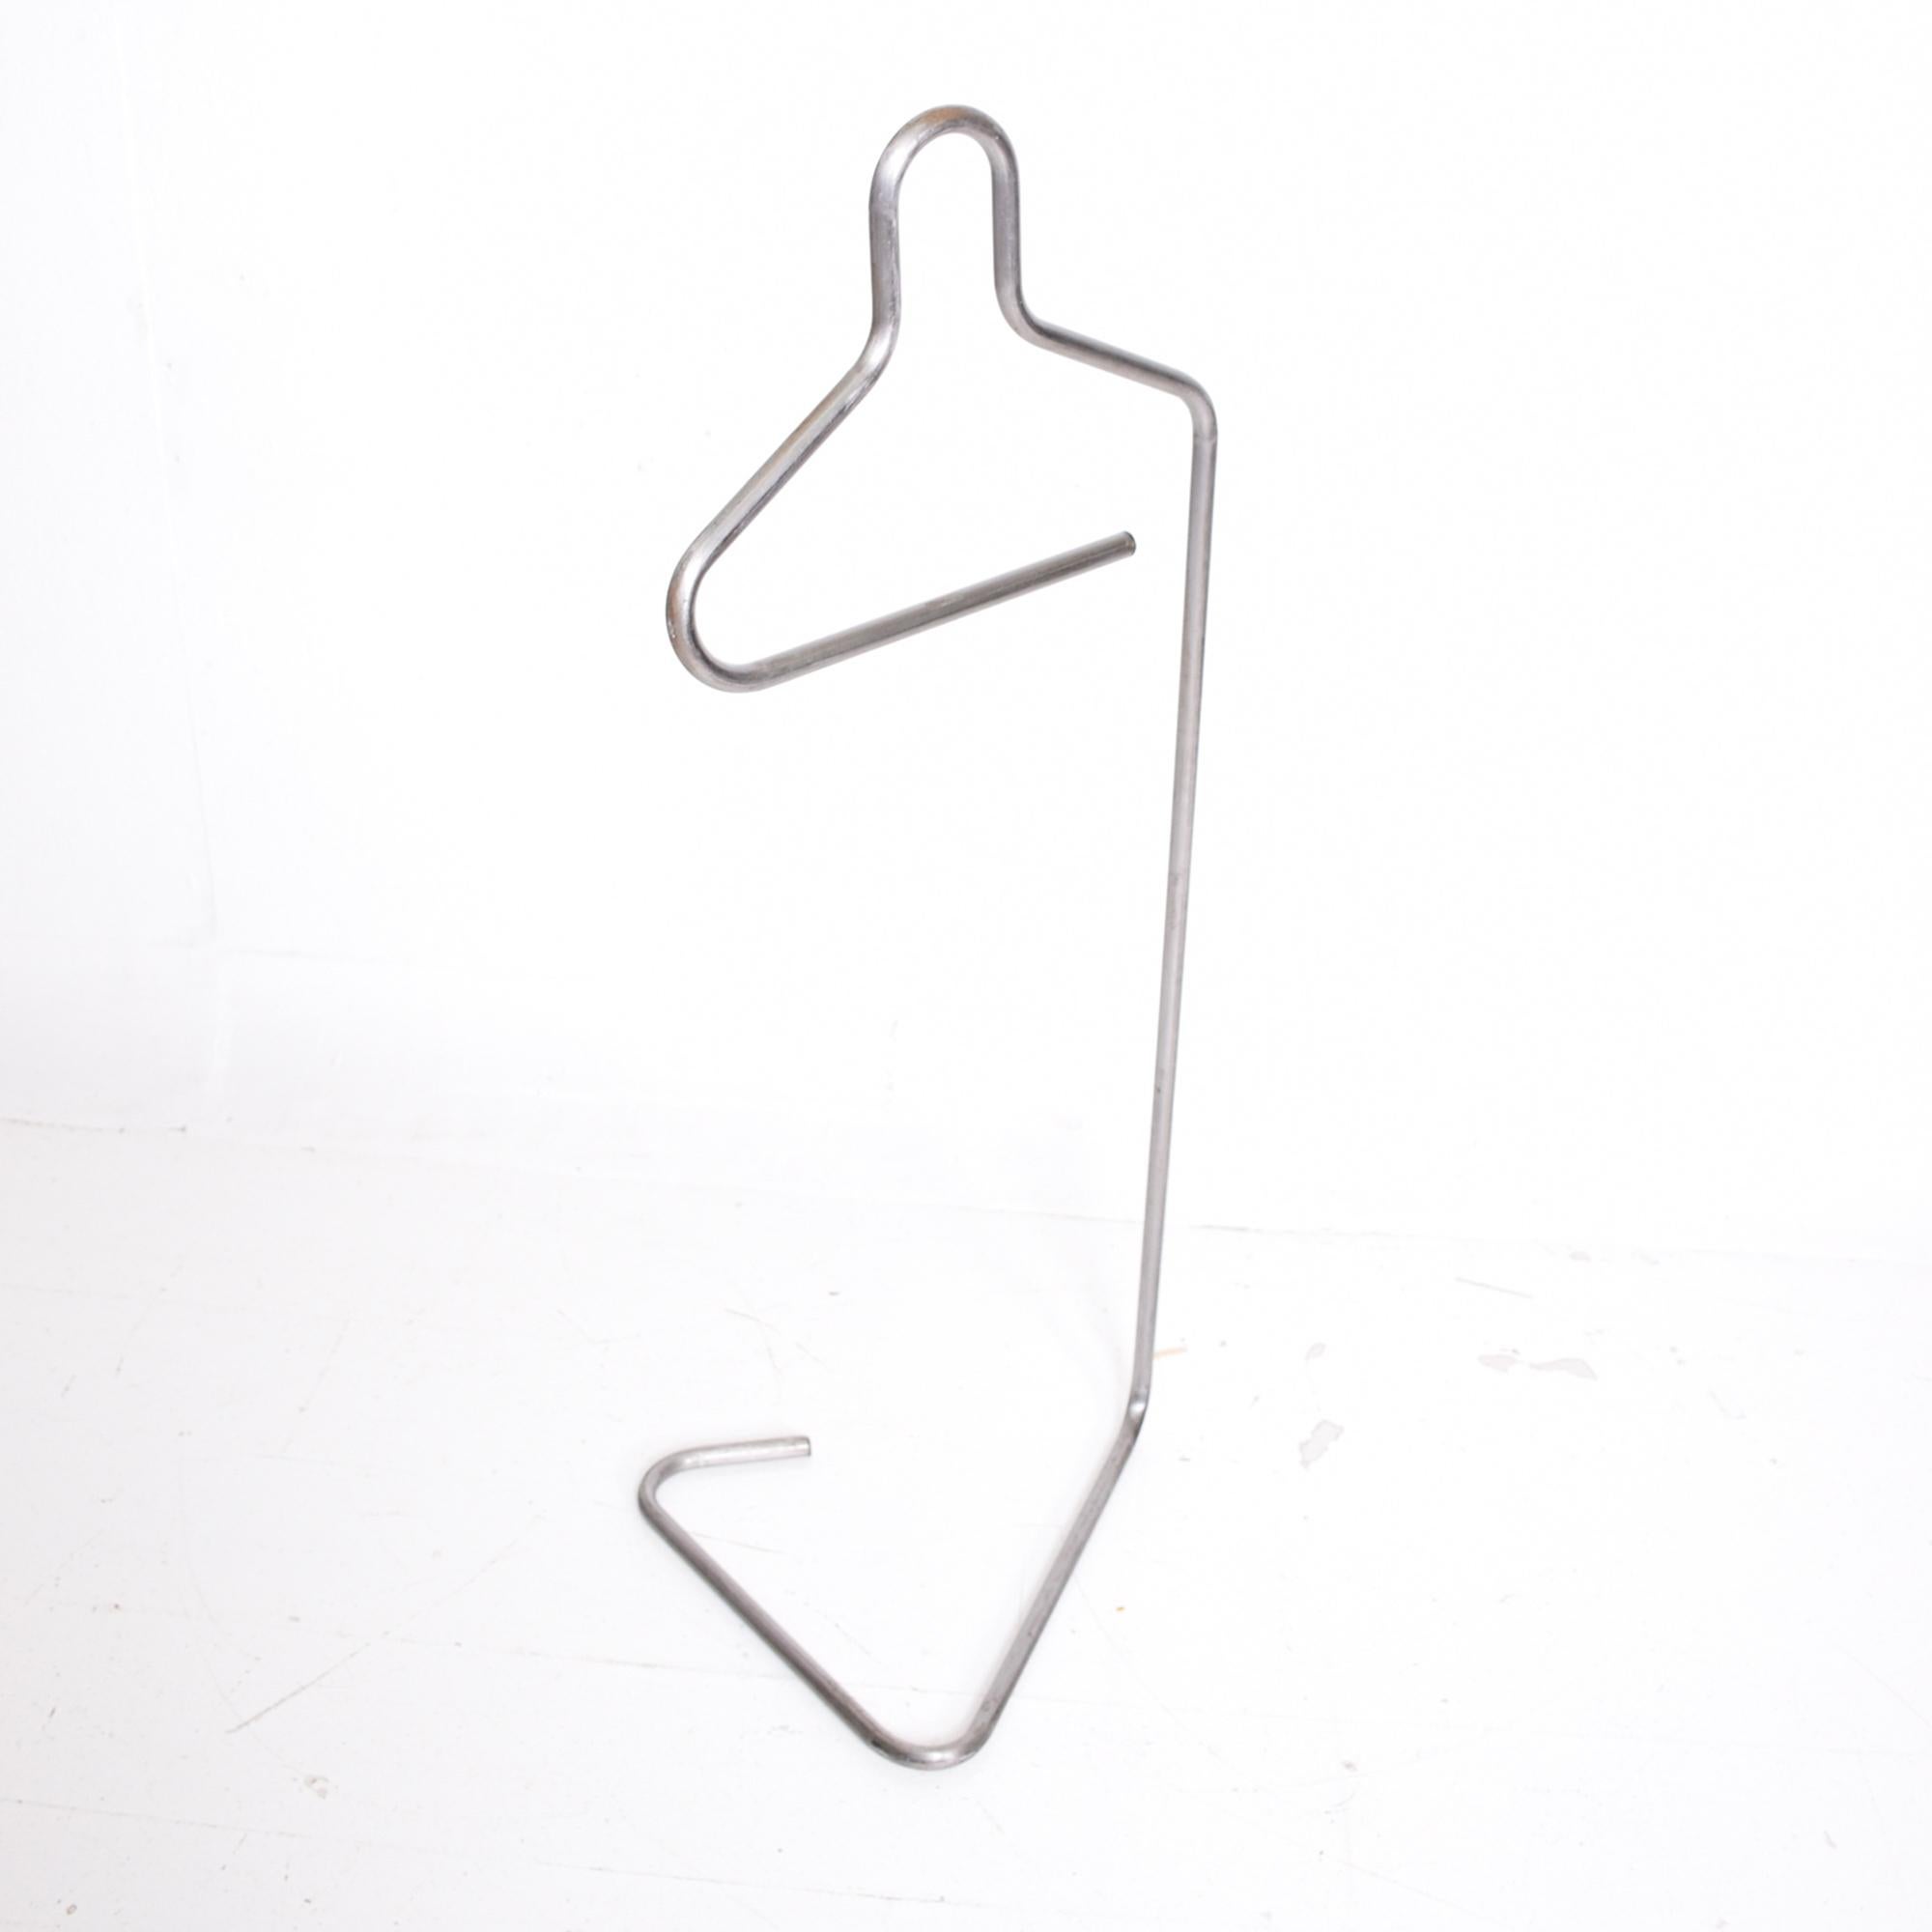 American 1970s Gentleman's Silver Valet Coat Hanger Stand Sculpted Tubular Metal